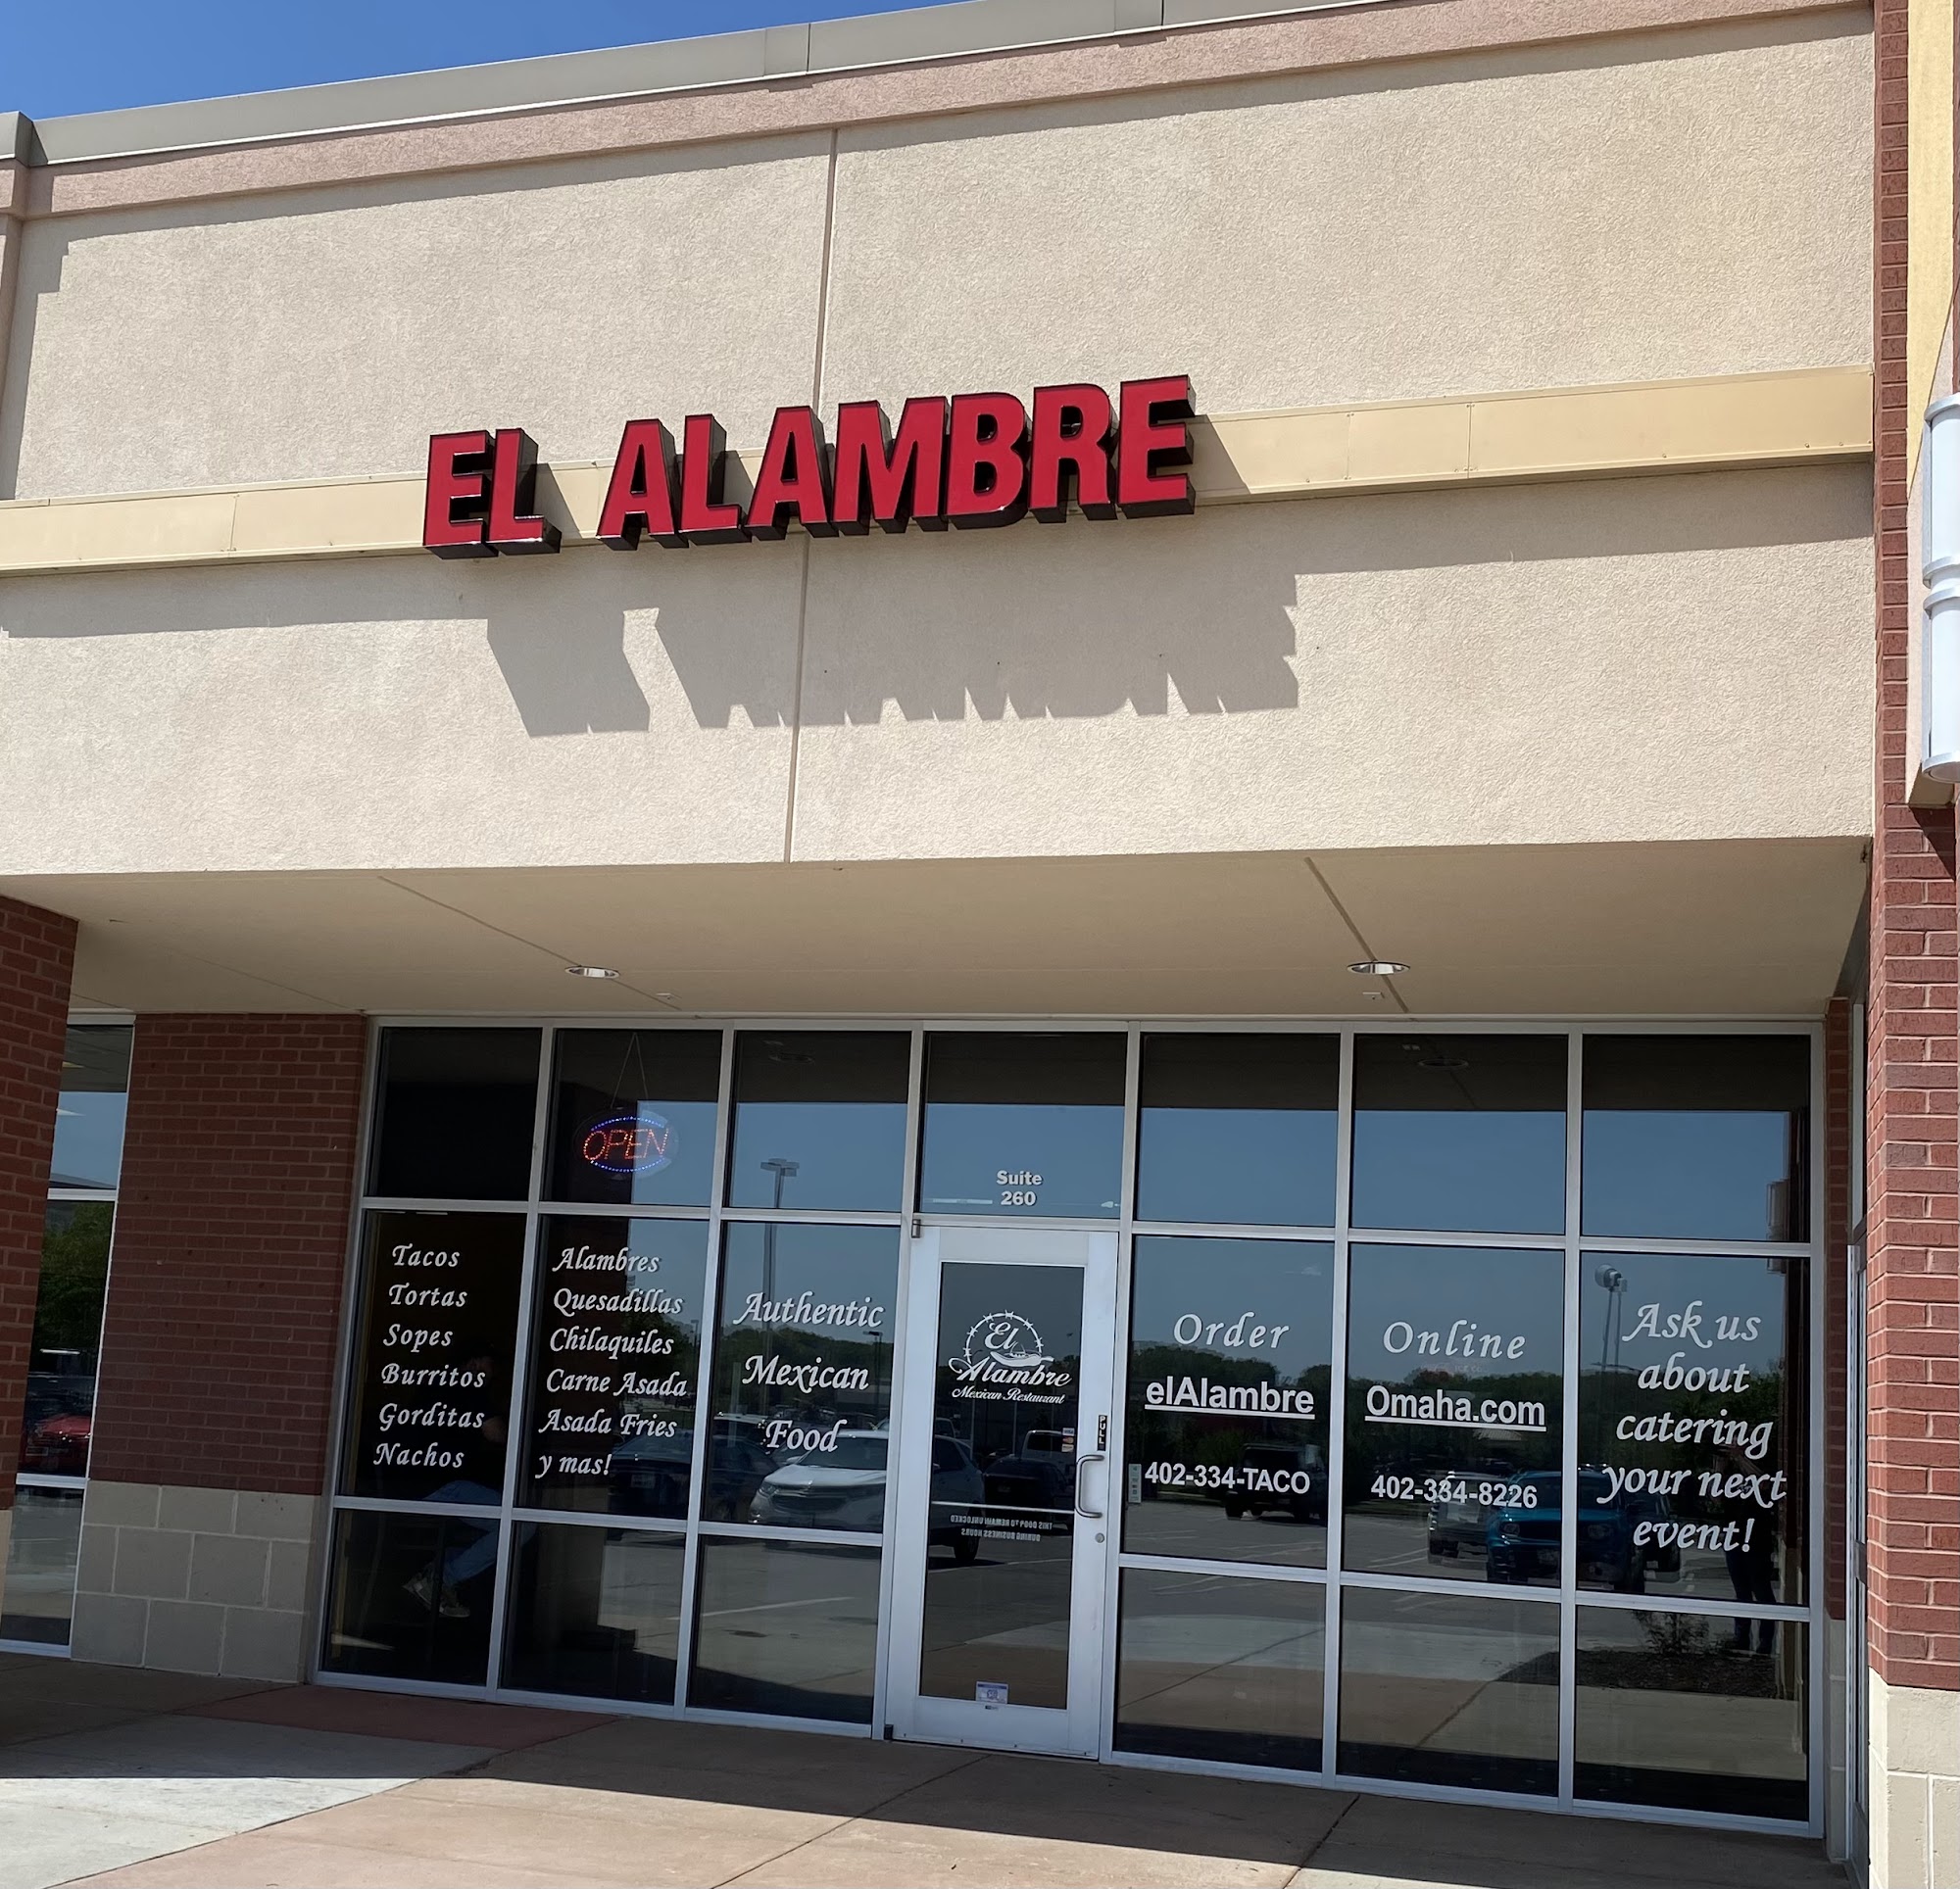 El Alambre Mexican Food - Elkhorn 940 N 204th Ave #260, Elkhorn, NE 68022